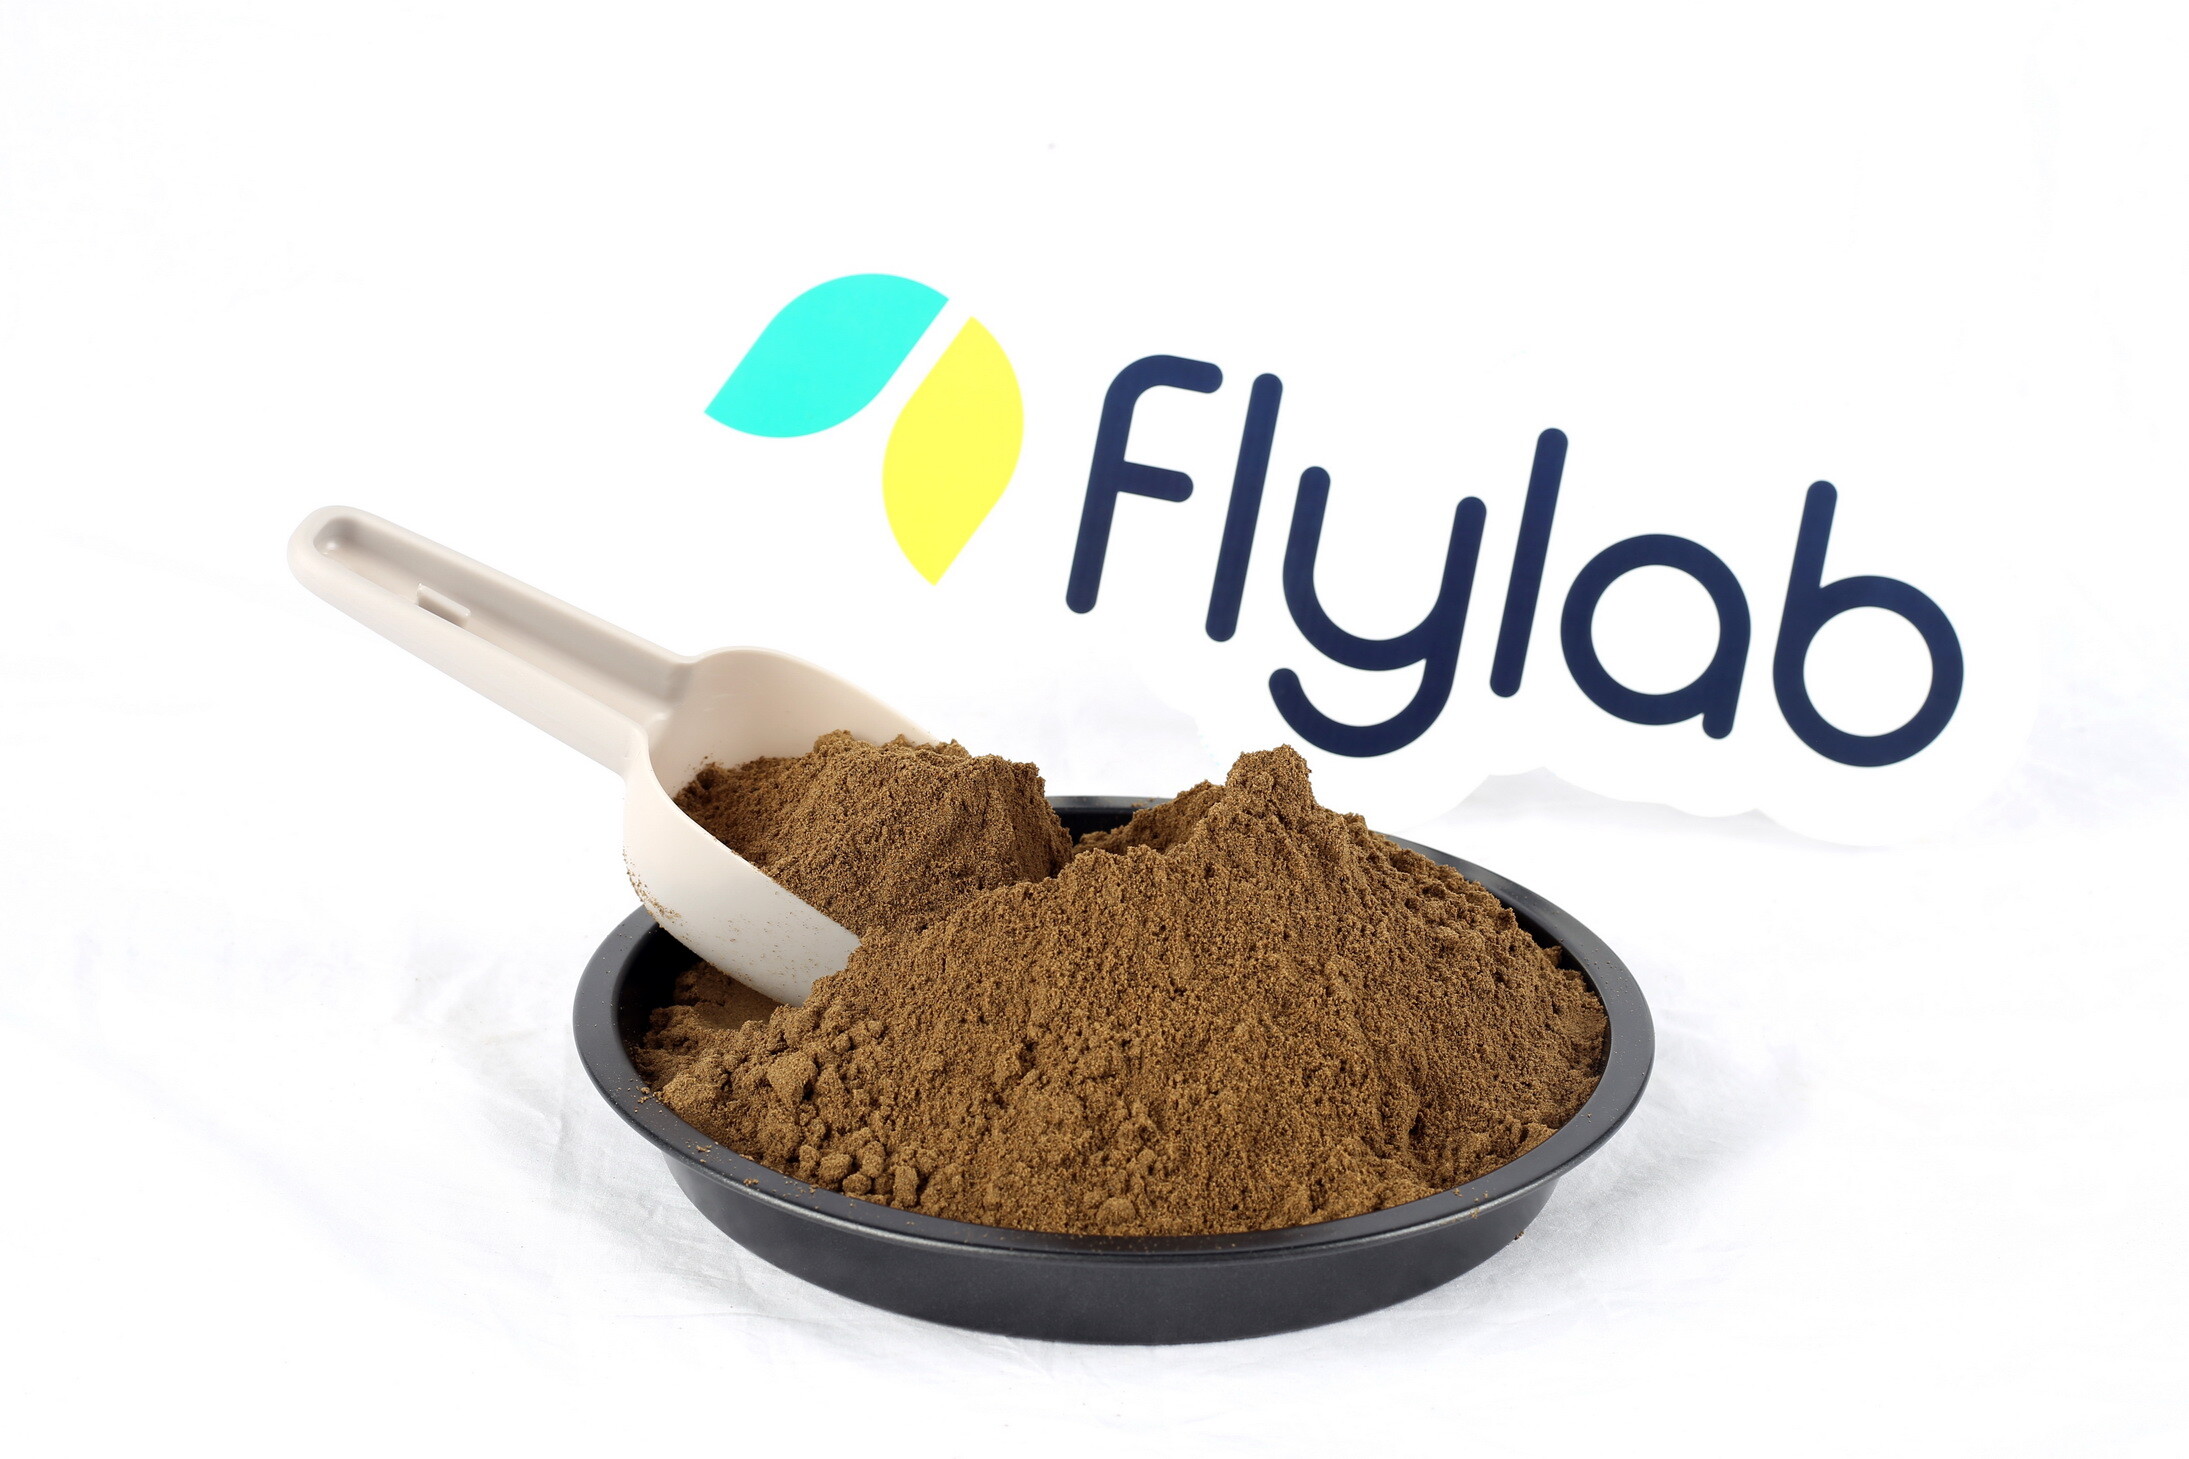 Flylab (ฟลายแล็บ) สตาร์ตอัพผู้ผลิตวัตถุดิบด้วยแมลง BSFL เผยกระแสตอบรับดีเกินคาด ตั้งเป้าการผลิตมากกว่า 1,500 ตันต่อปี